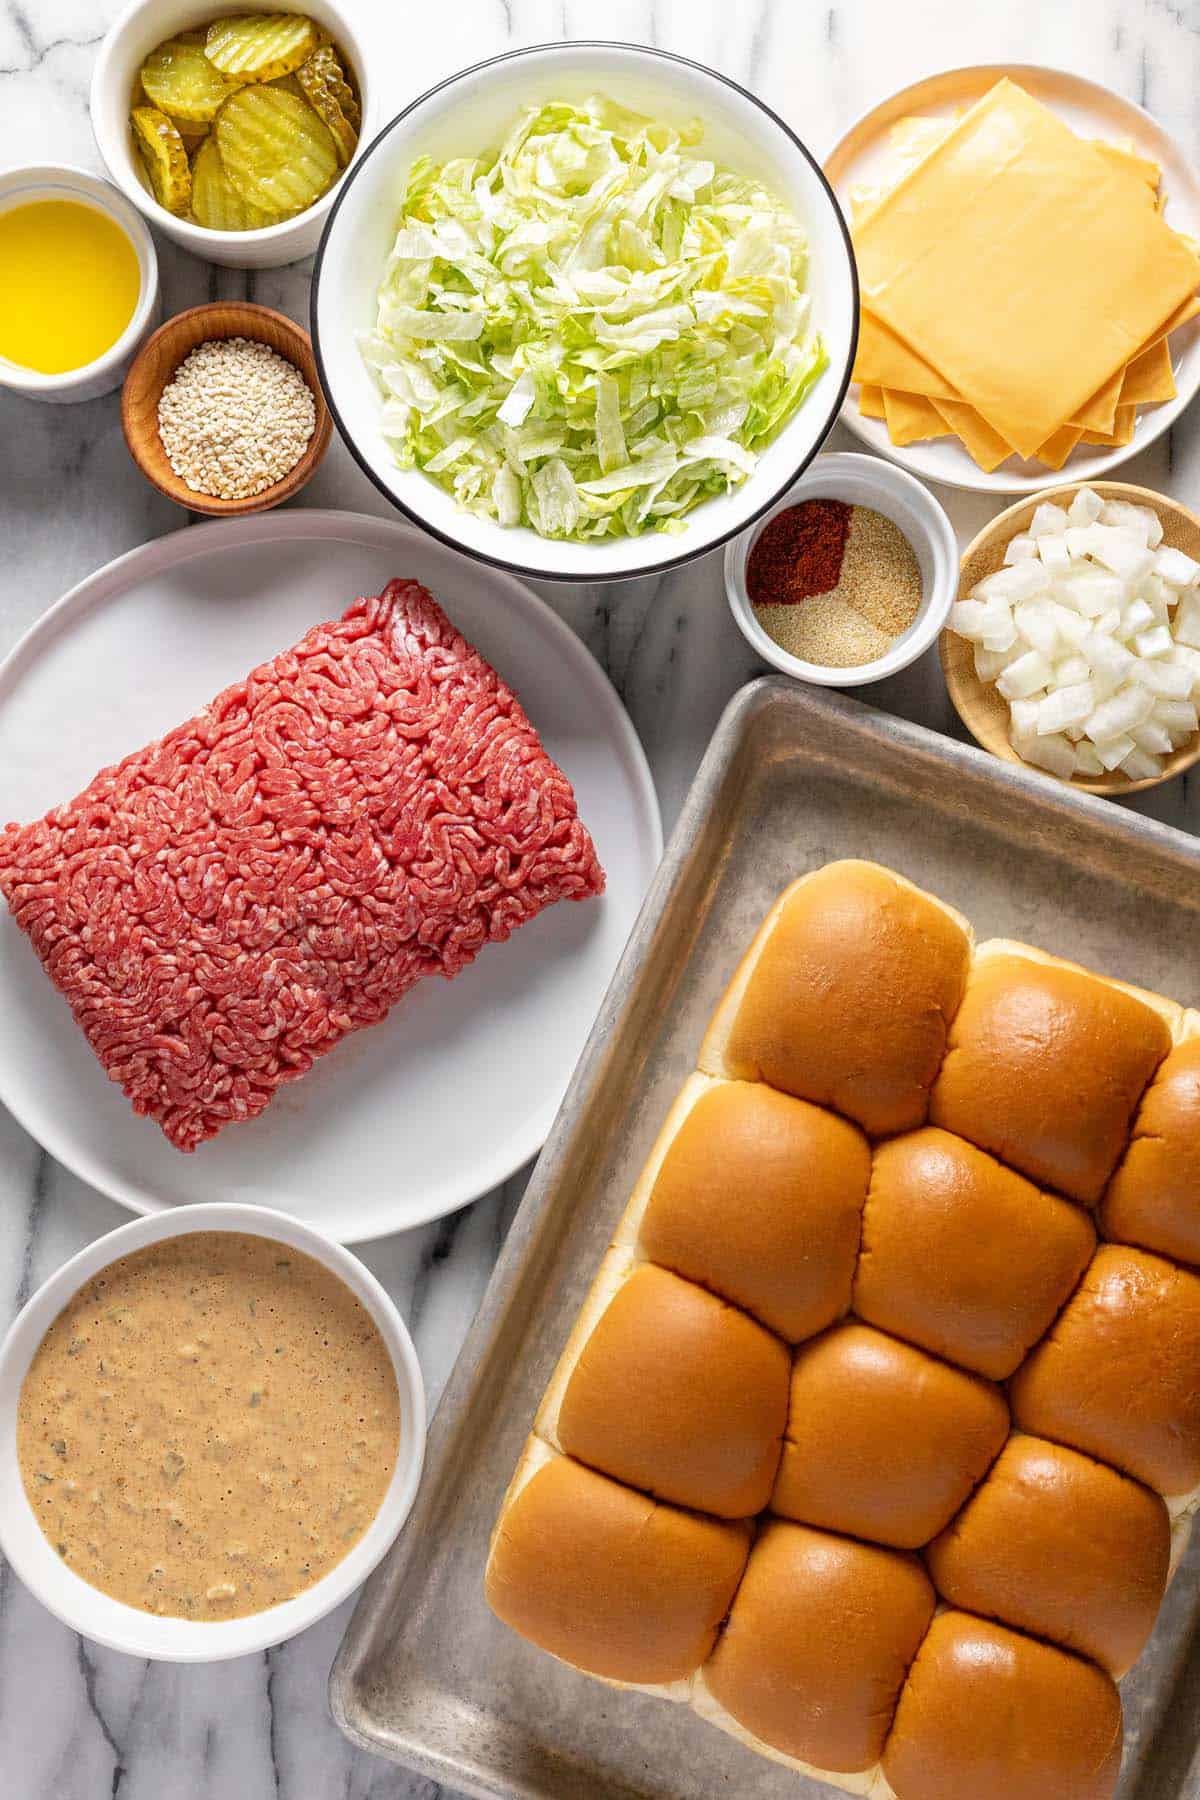 Bowls of ingredients to make Big Mac sliders. 